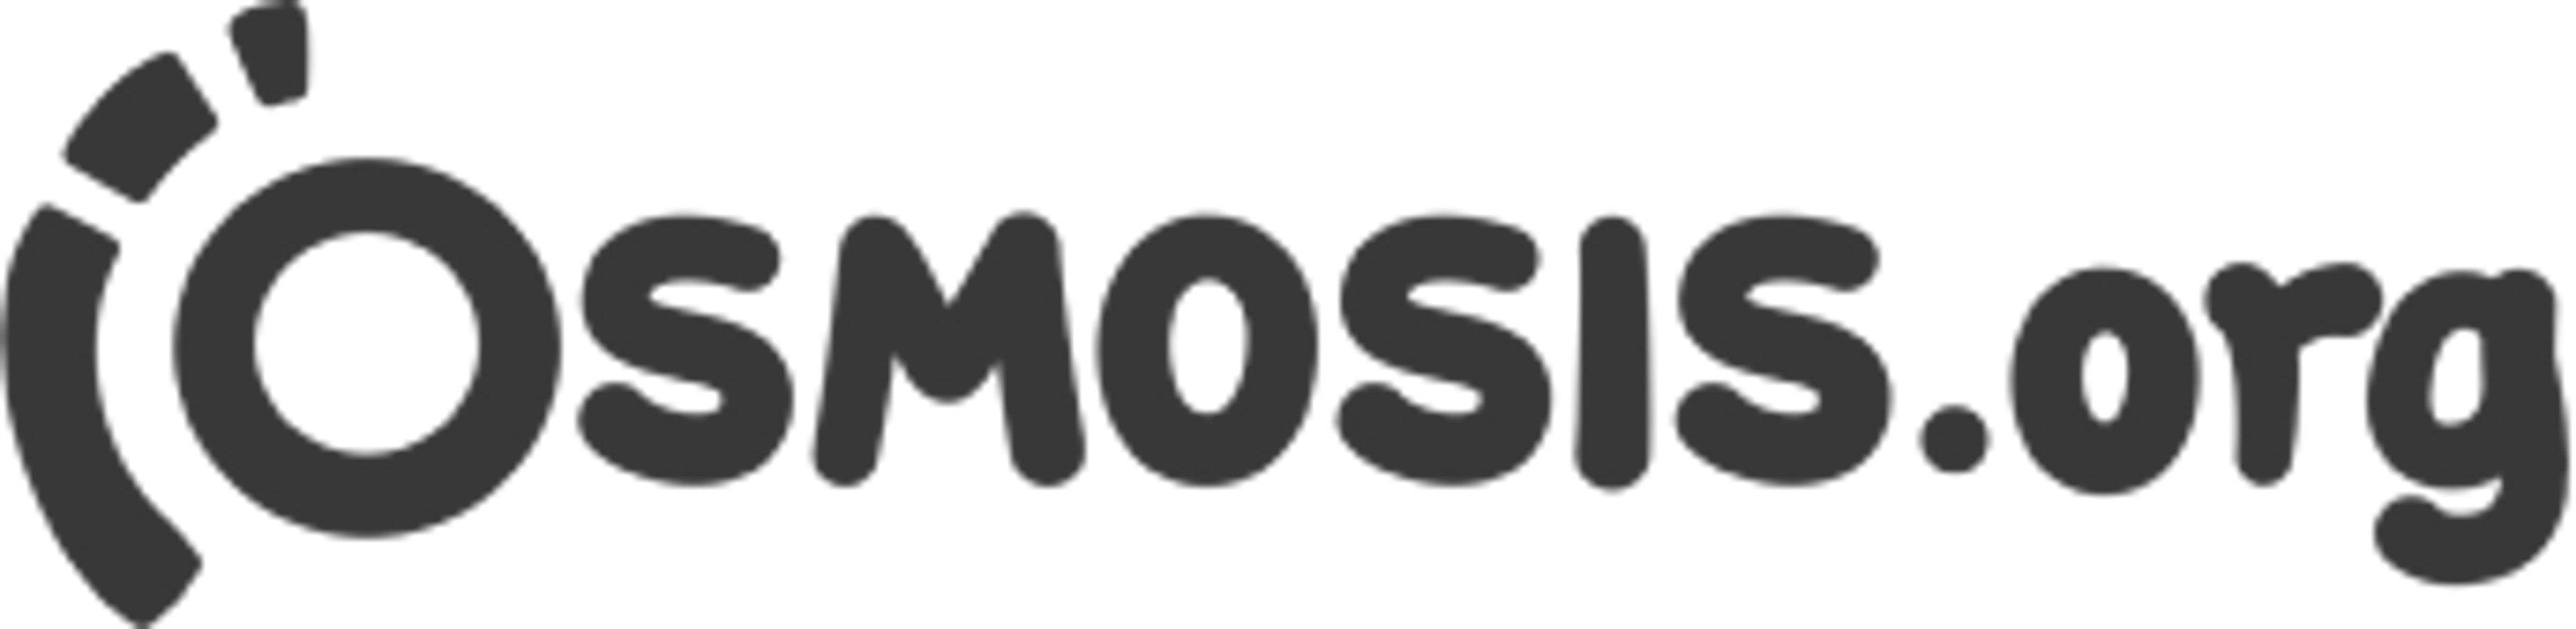 Osmosis.org logo